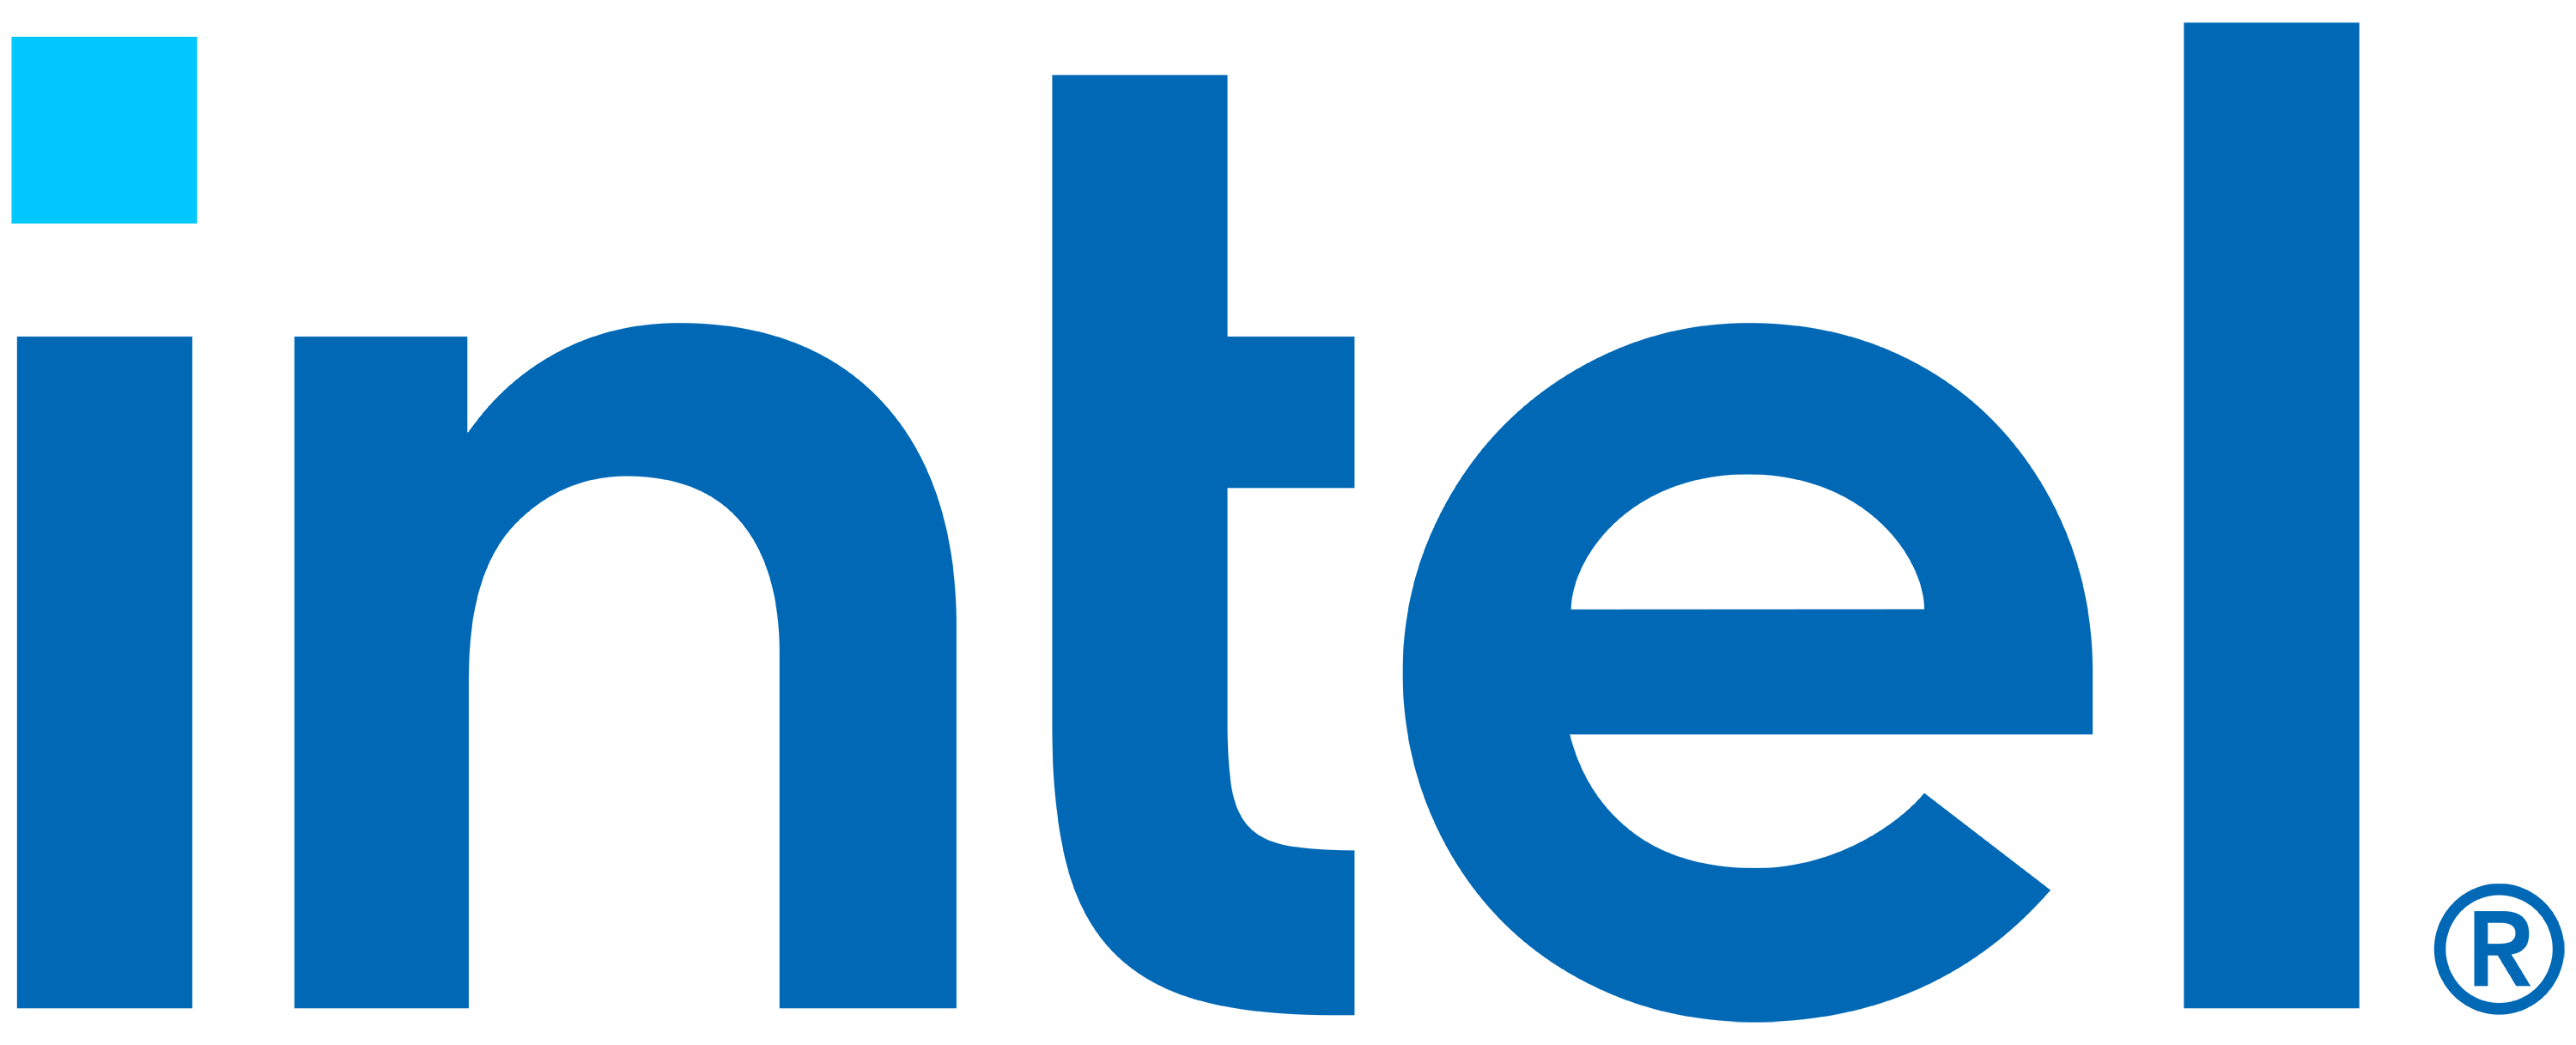 Intel-logo-nobox.png